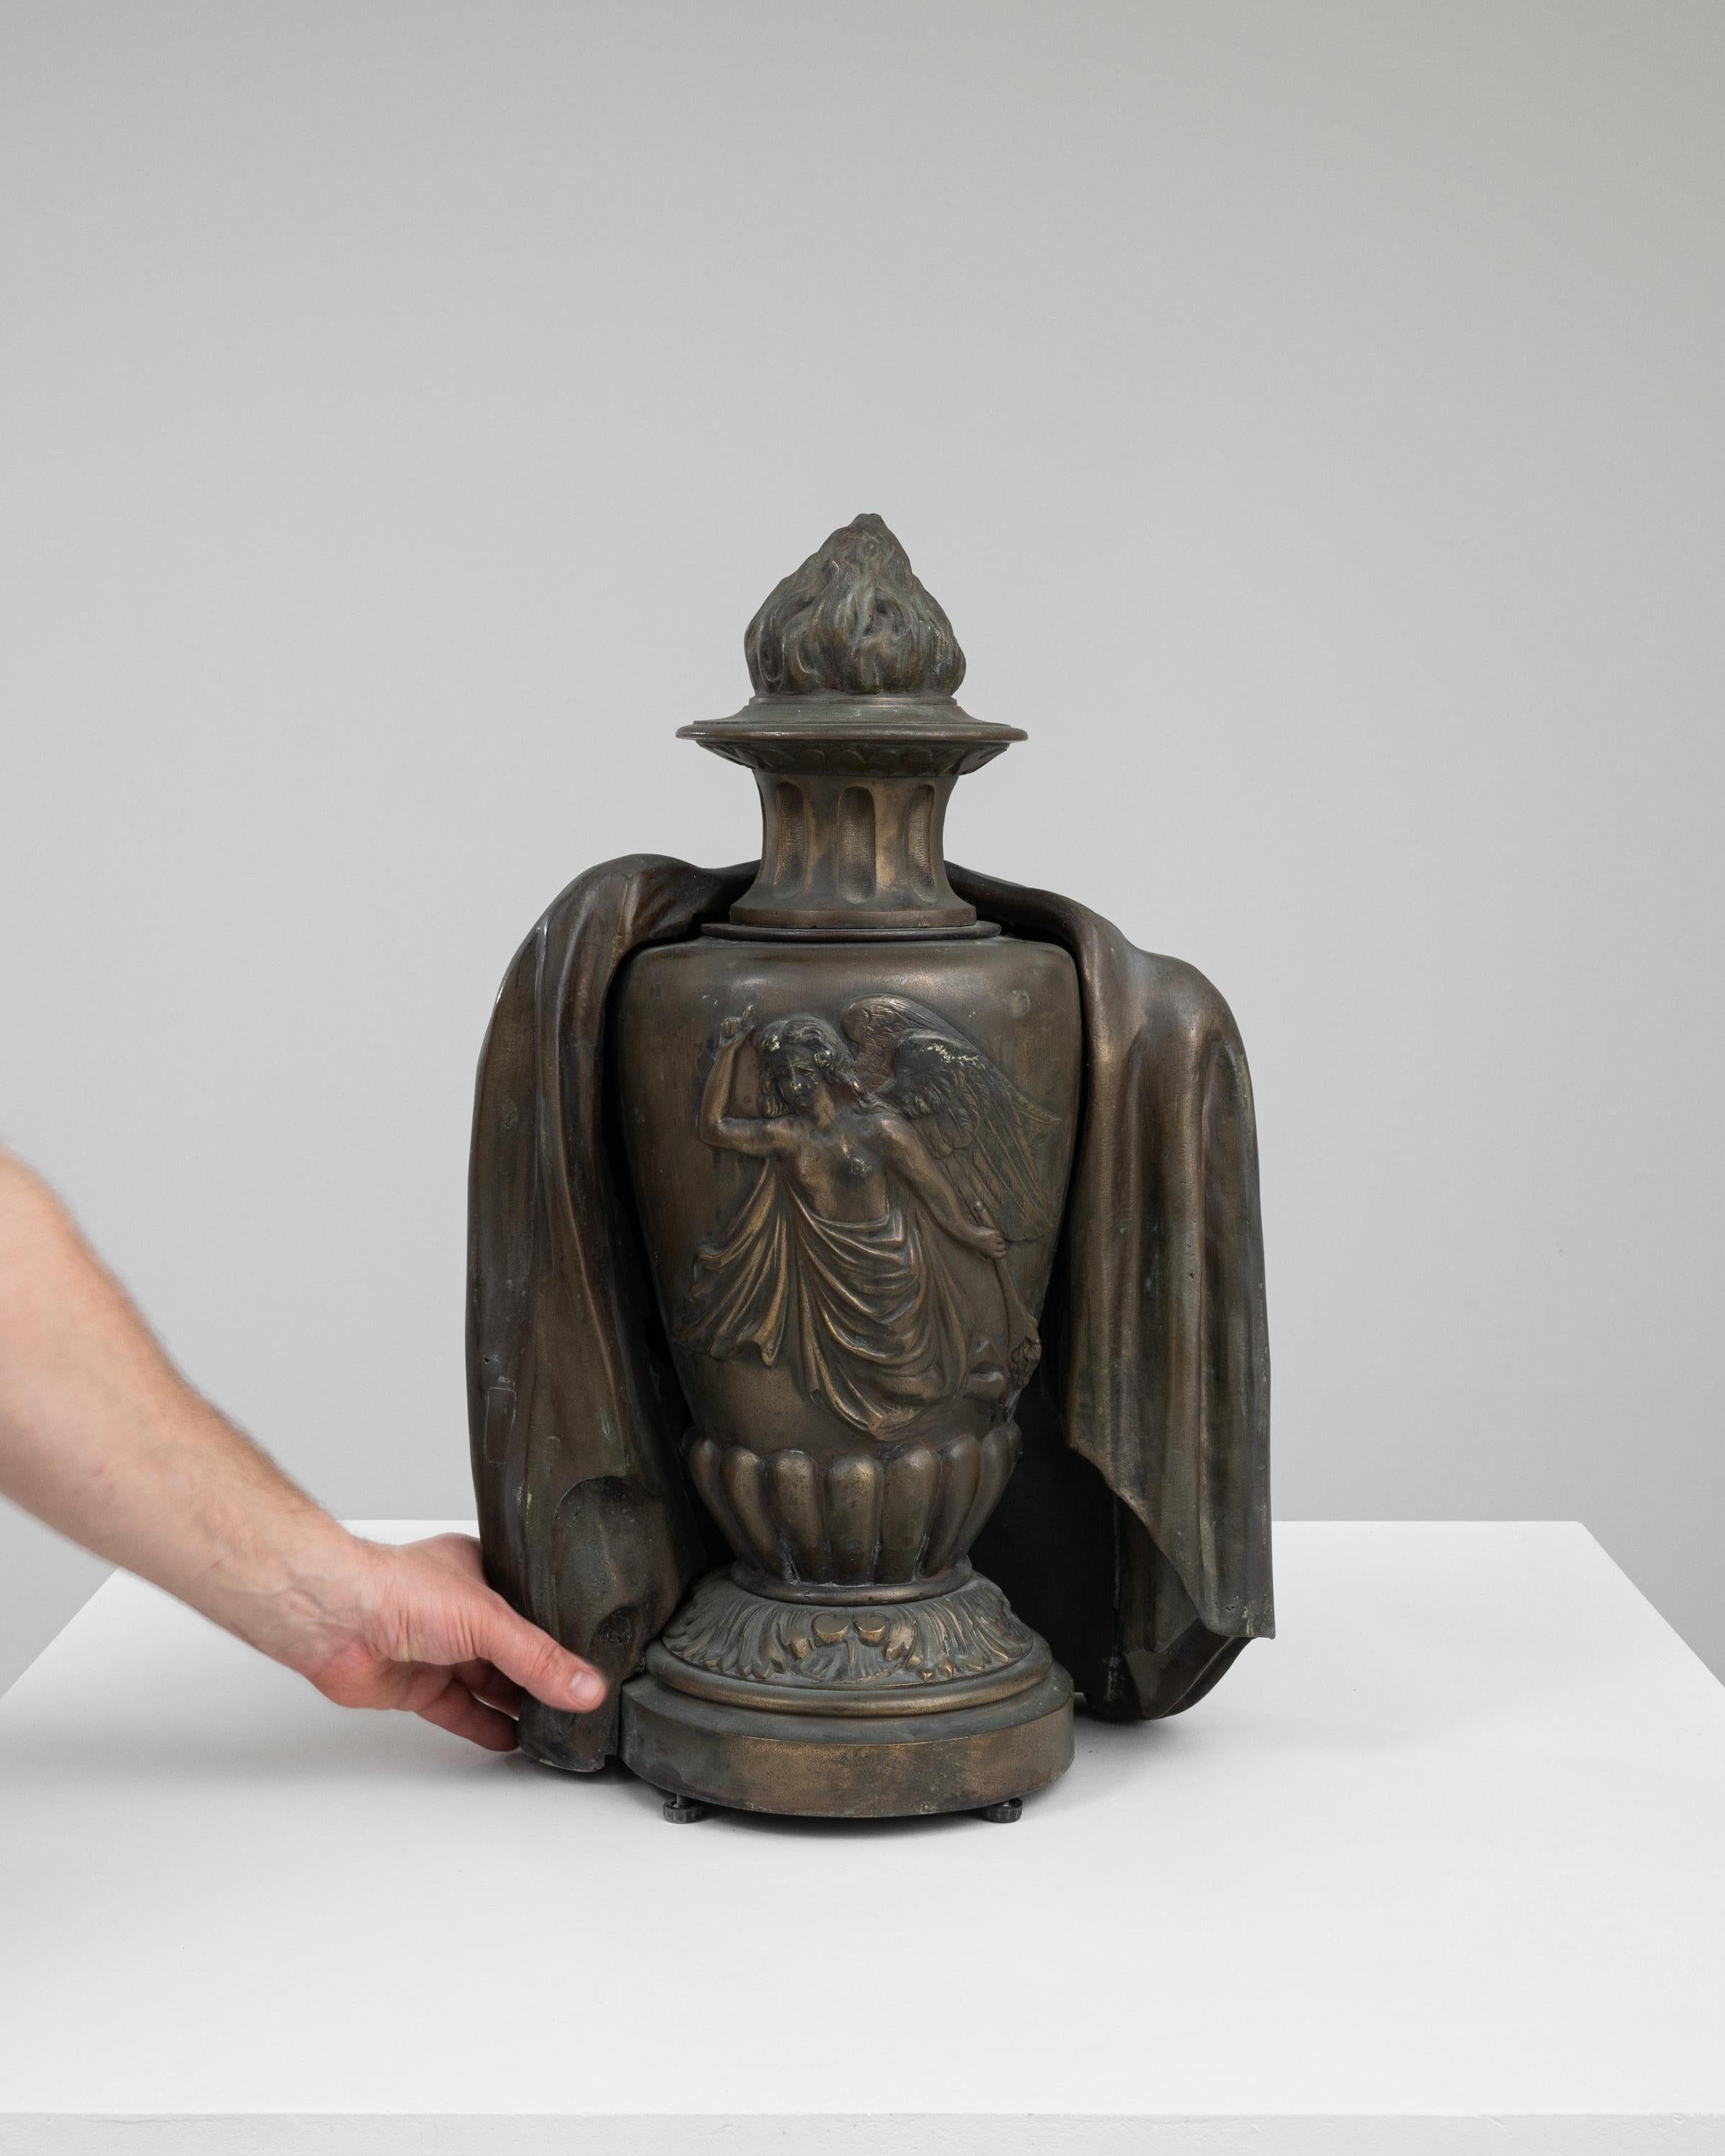 Diese bezaubernde französische Bronzeurne aus dem Jahr 1900 ist ein exquisites Relikt, das die Kunstfertigkeit und Mystik seiner Zeit verkörpert. Die Urne ist mit den anmutigen Falten eines klassischen Gewandes drapiert und wird von der heiteren,